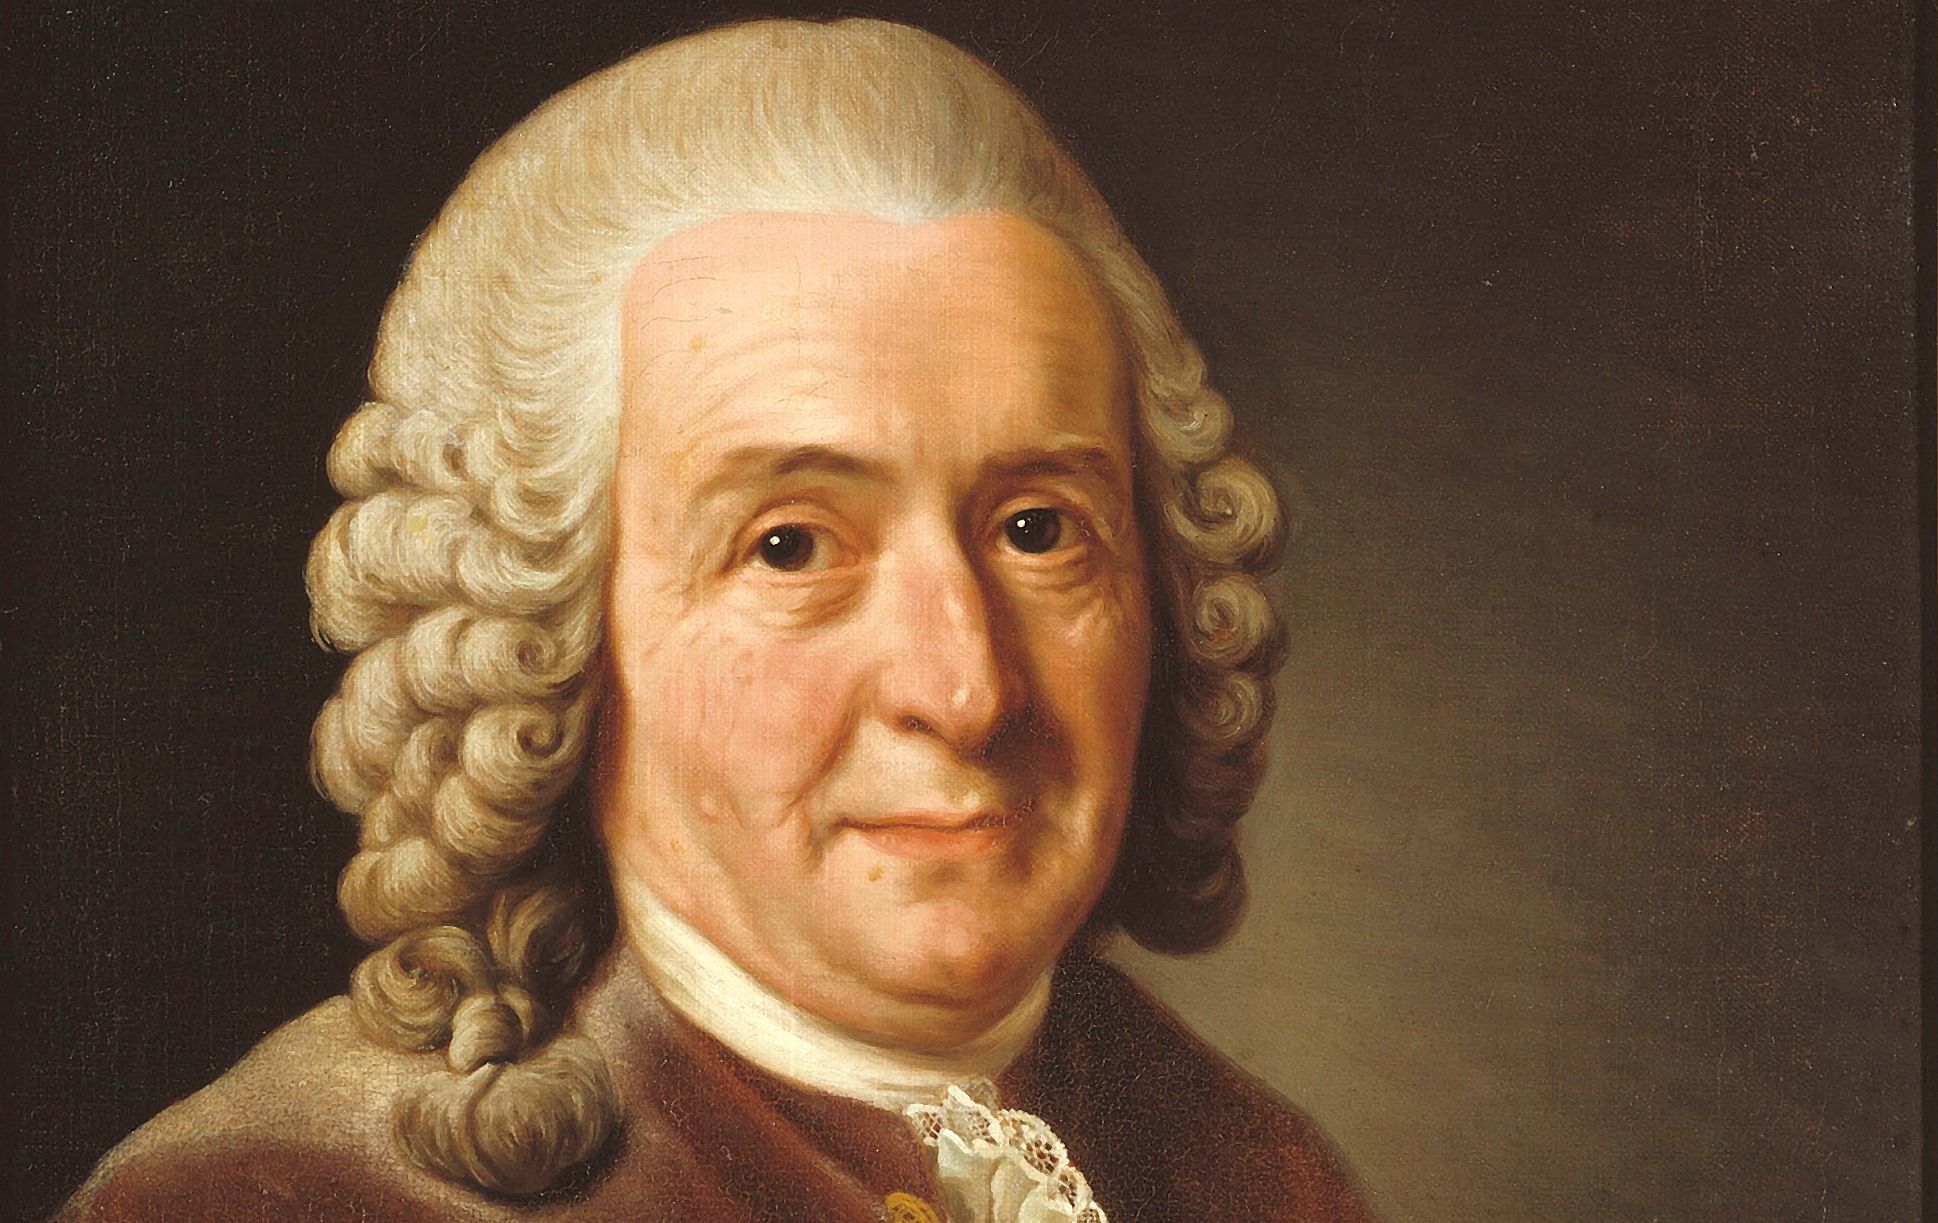 Carl Linnaeus (I)